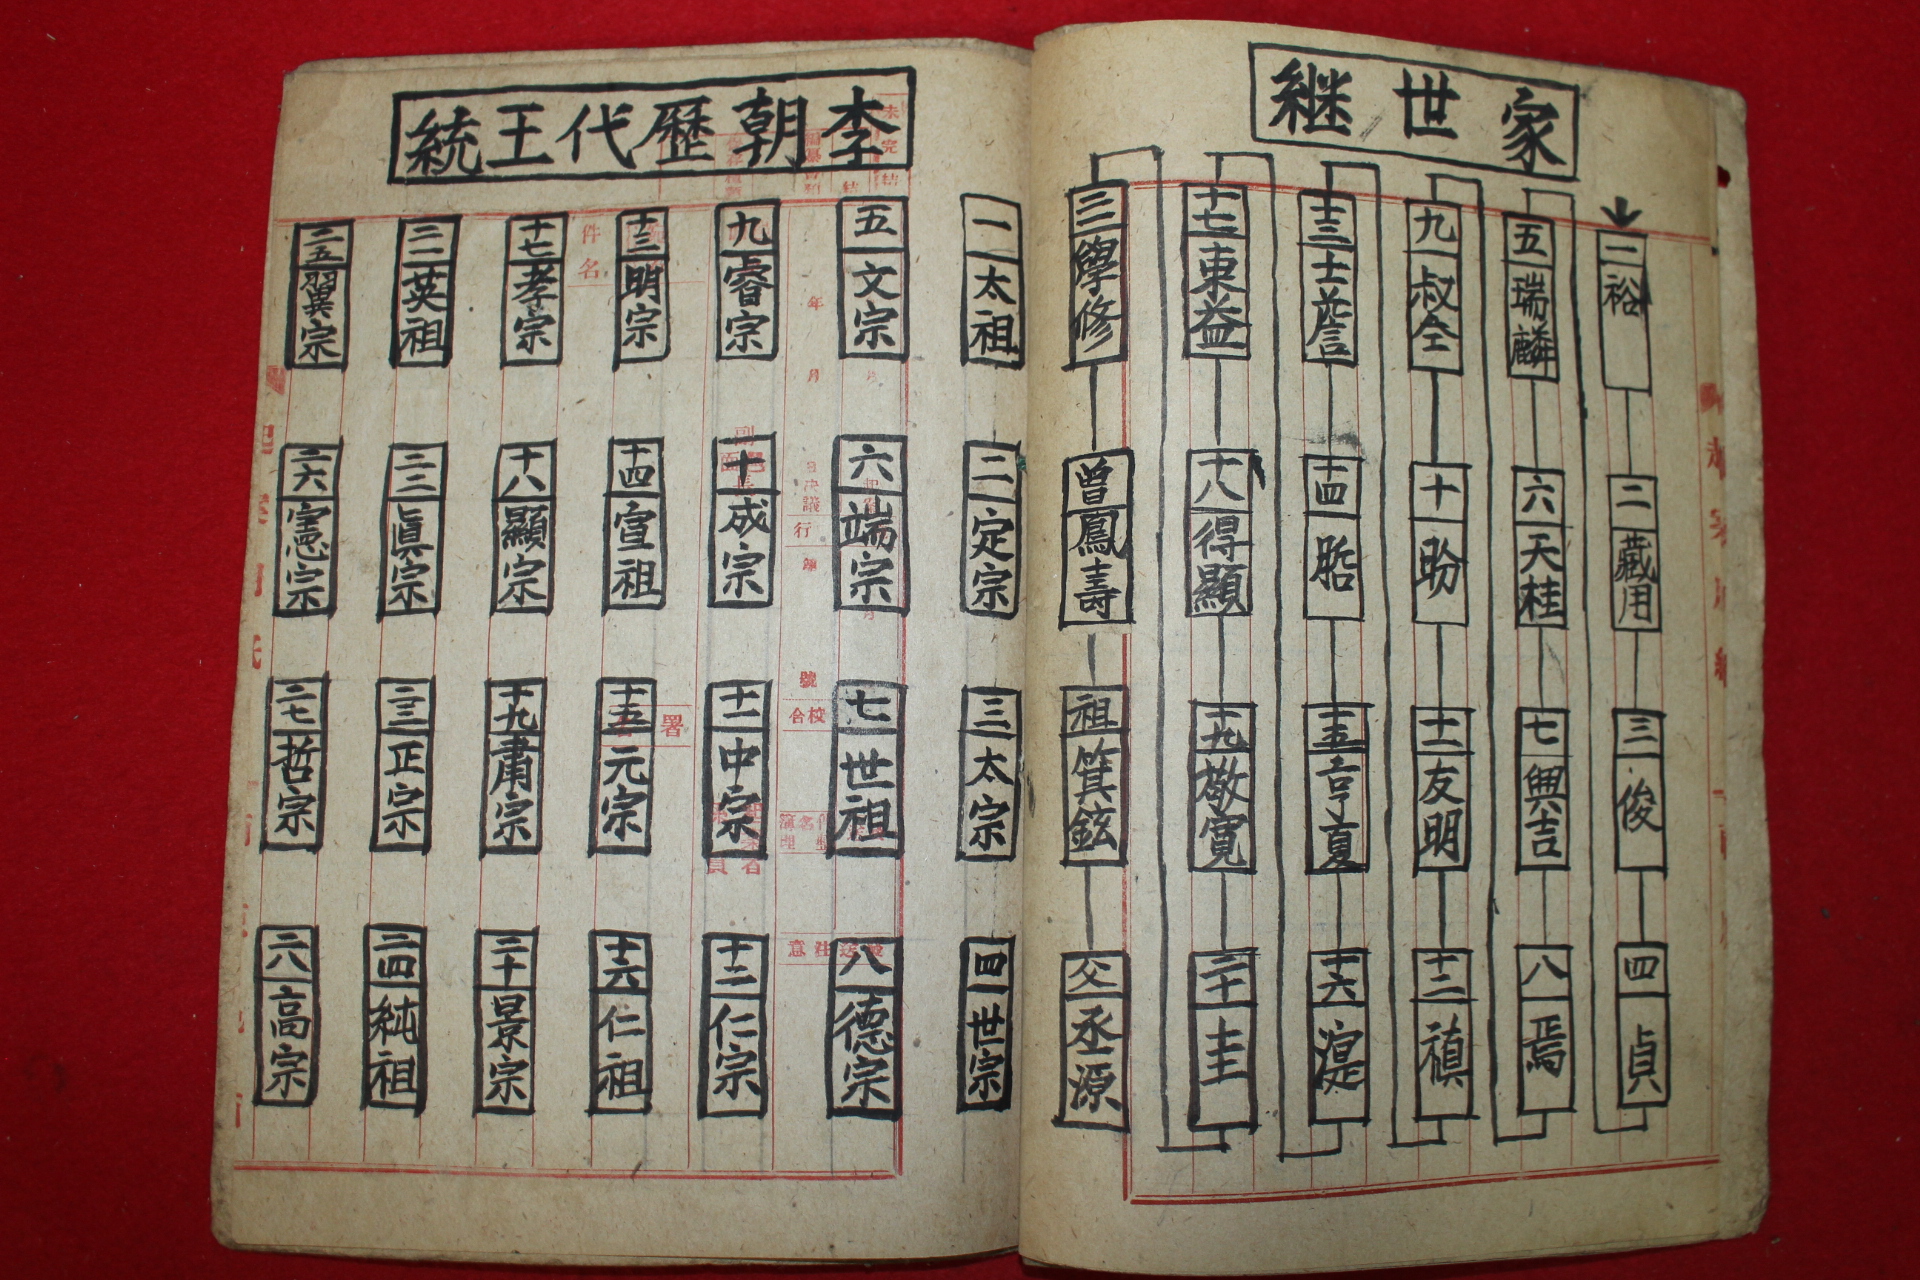 1947년 필사본 풍천노씨세보(豊川盧氏世譜)